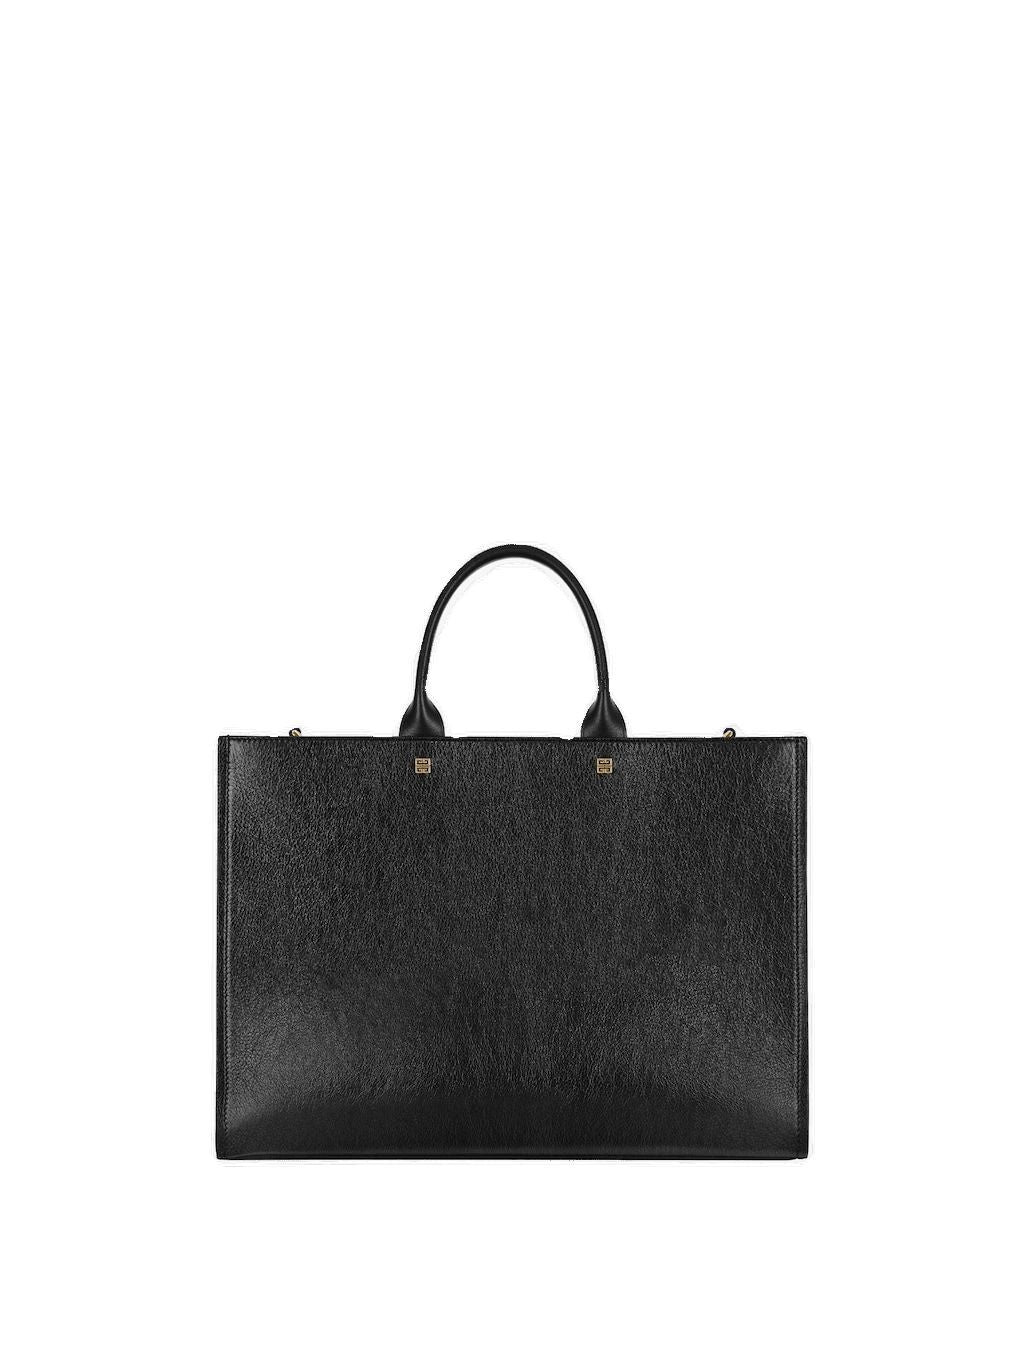 GIVENCHY Black Leather Tote Handbag for Women - Designer Top-Handle Bag